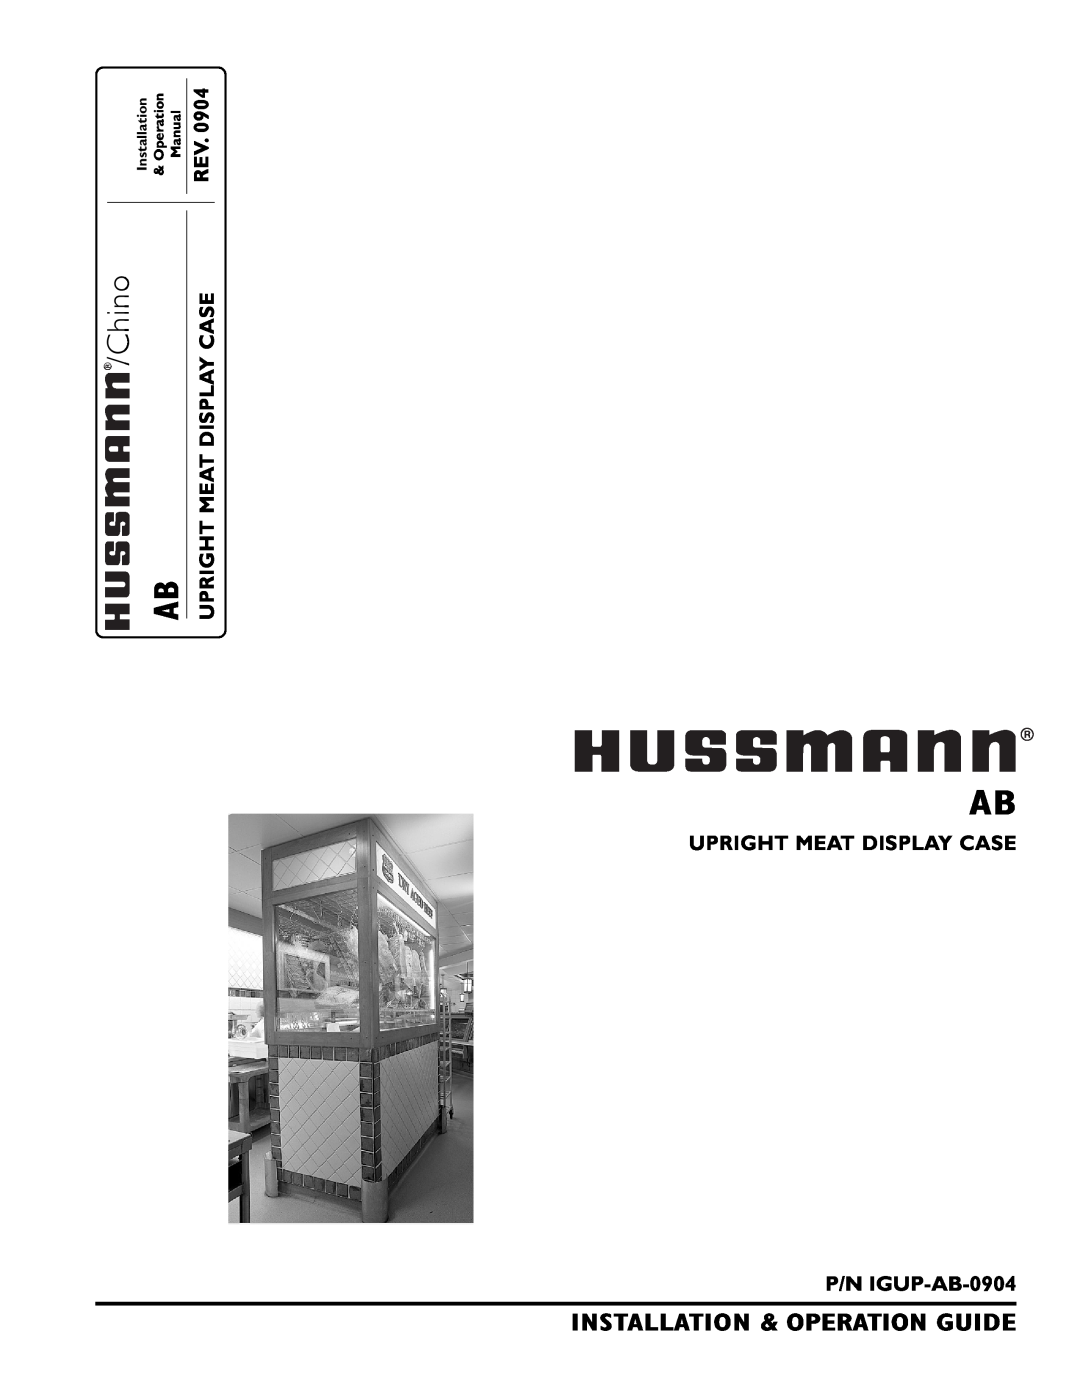 hussman operation manual Chino, UPRIGHT MEAT DISPLAY CASE P/N IGUP-AB-0904, Rev, Upright Meat Display Case, Operation 